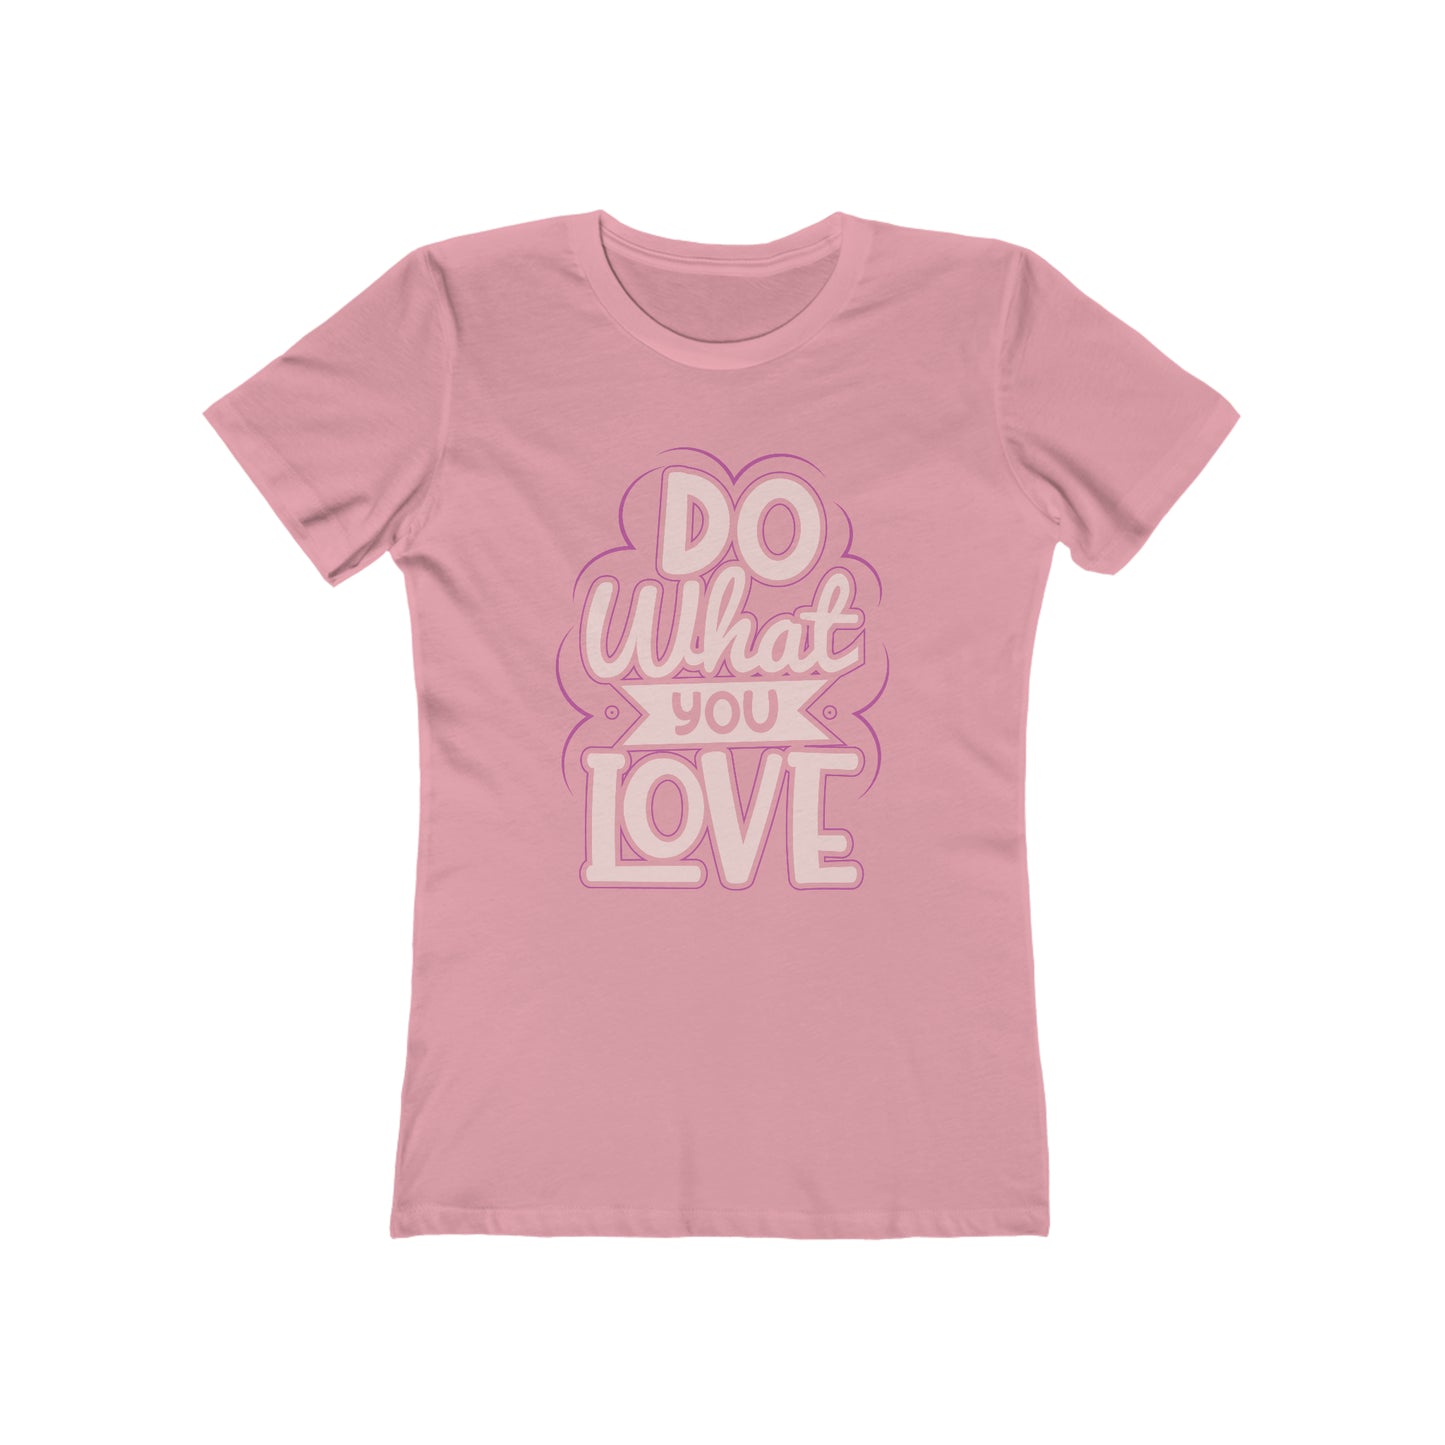 Do what you love - Women's T-shirt